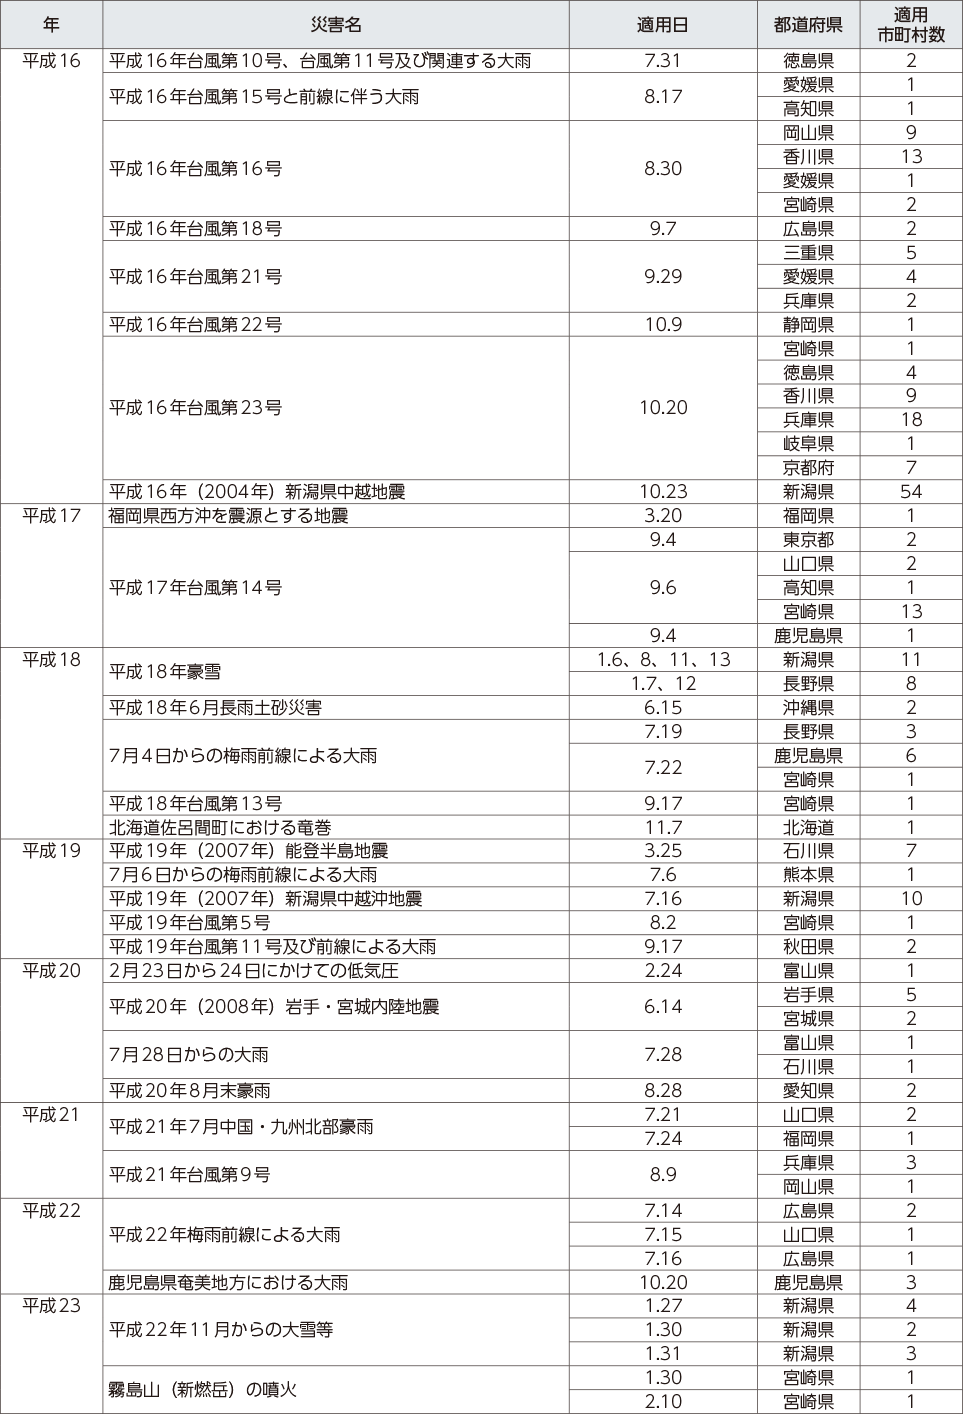 附属資料12　災害救助法の適用実績（阪神・淡路大震災以降）（2）